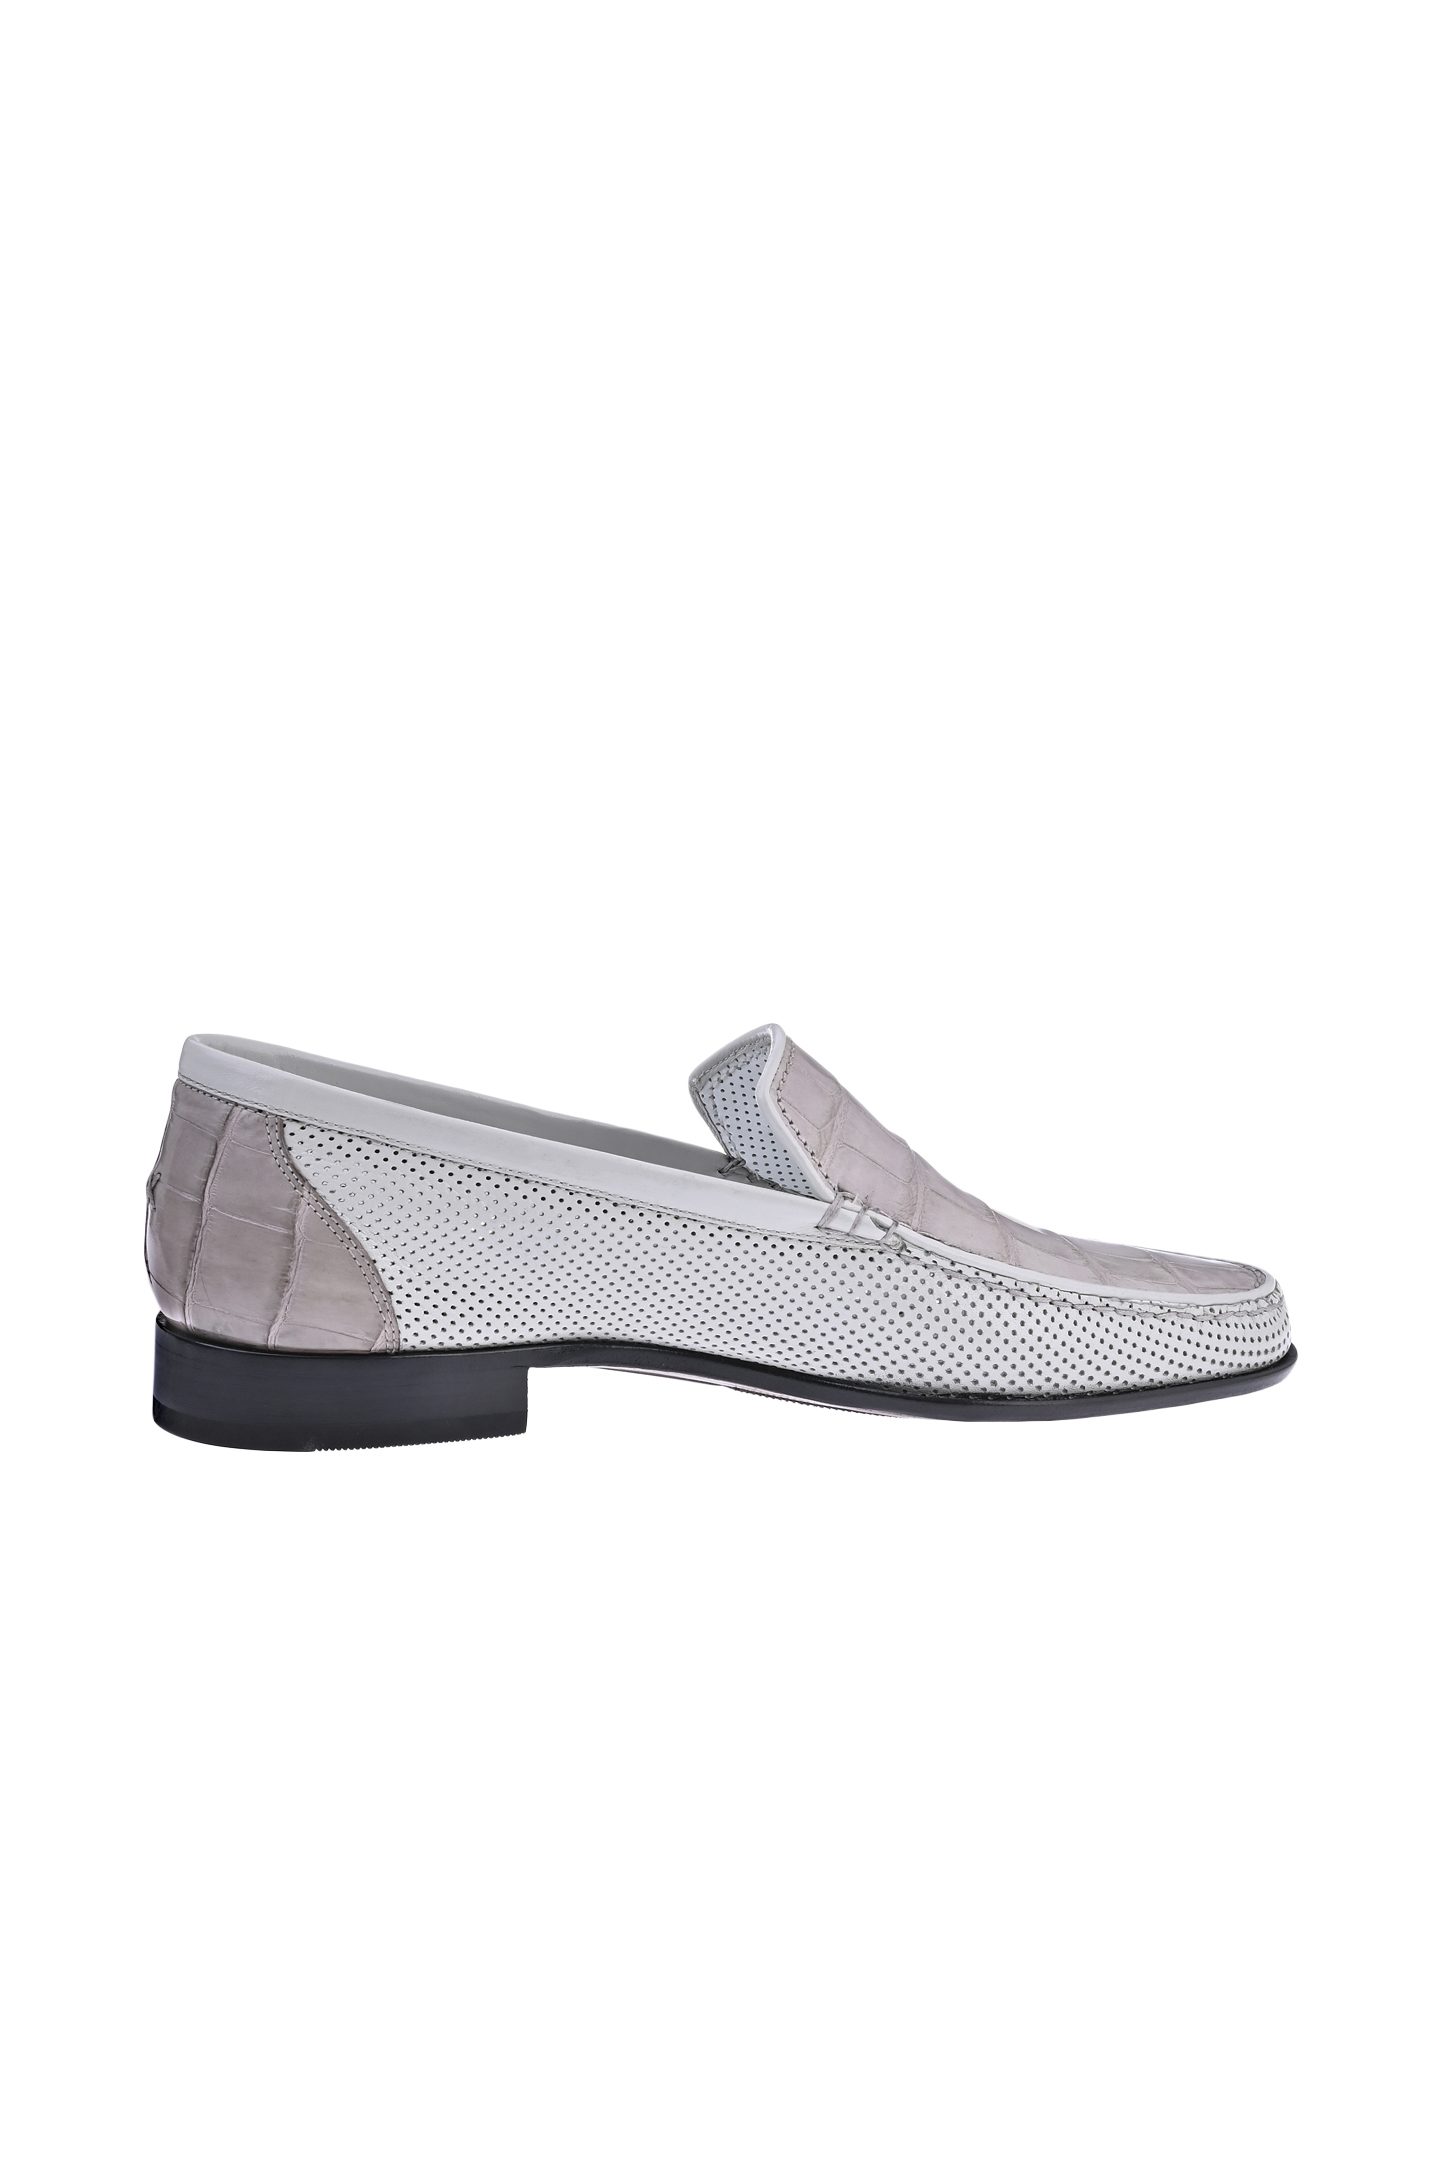 Туфли ARTIOLI 756, цвет: Серый, Мужской